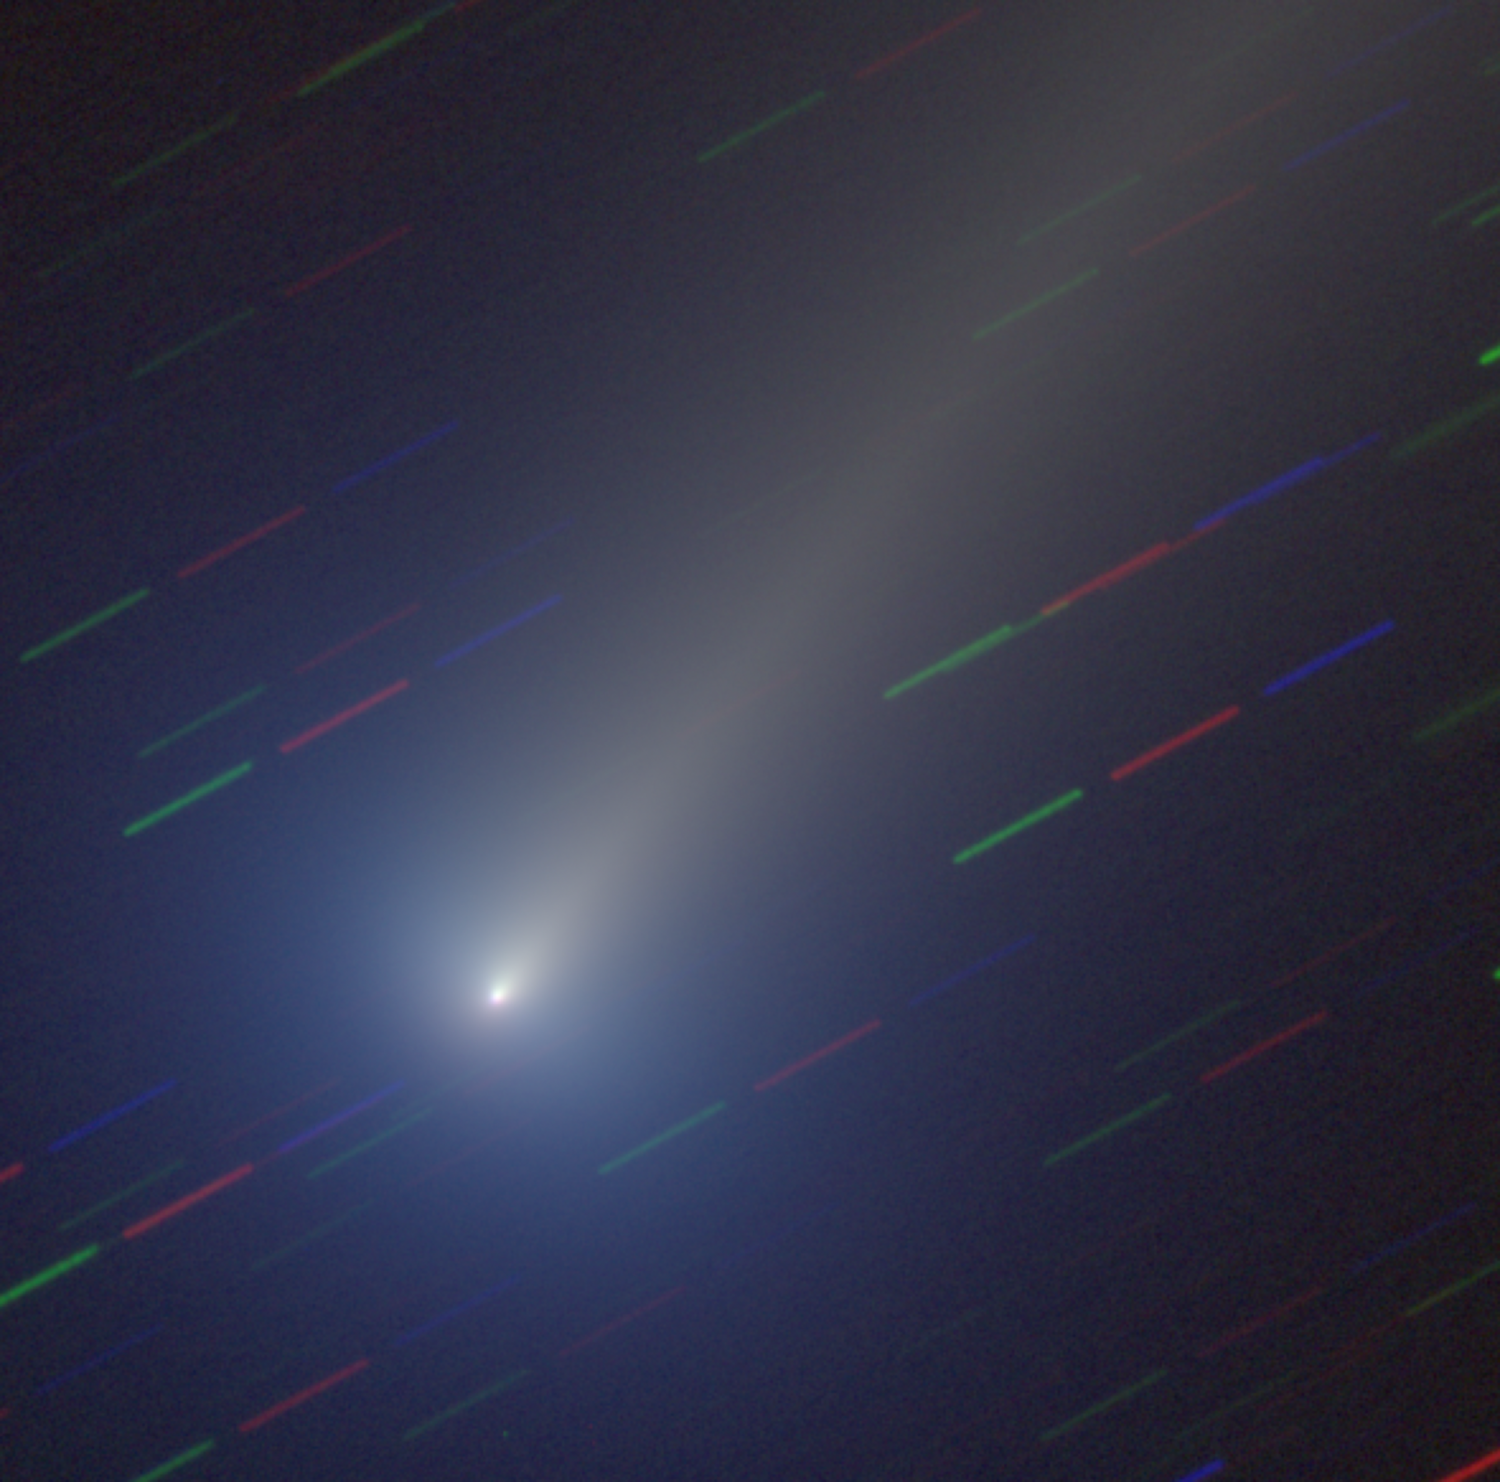 Ο επερχόμενος κομήτης Λέοναρντ πιθανώς θα γίνει ορατός με γυμνά μάτια σε λίγες μέρες